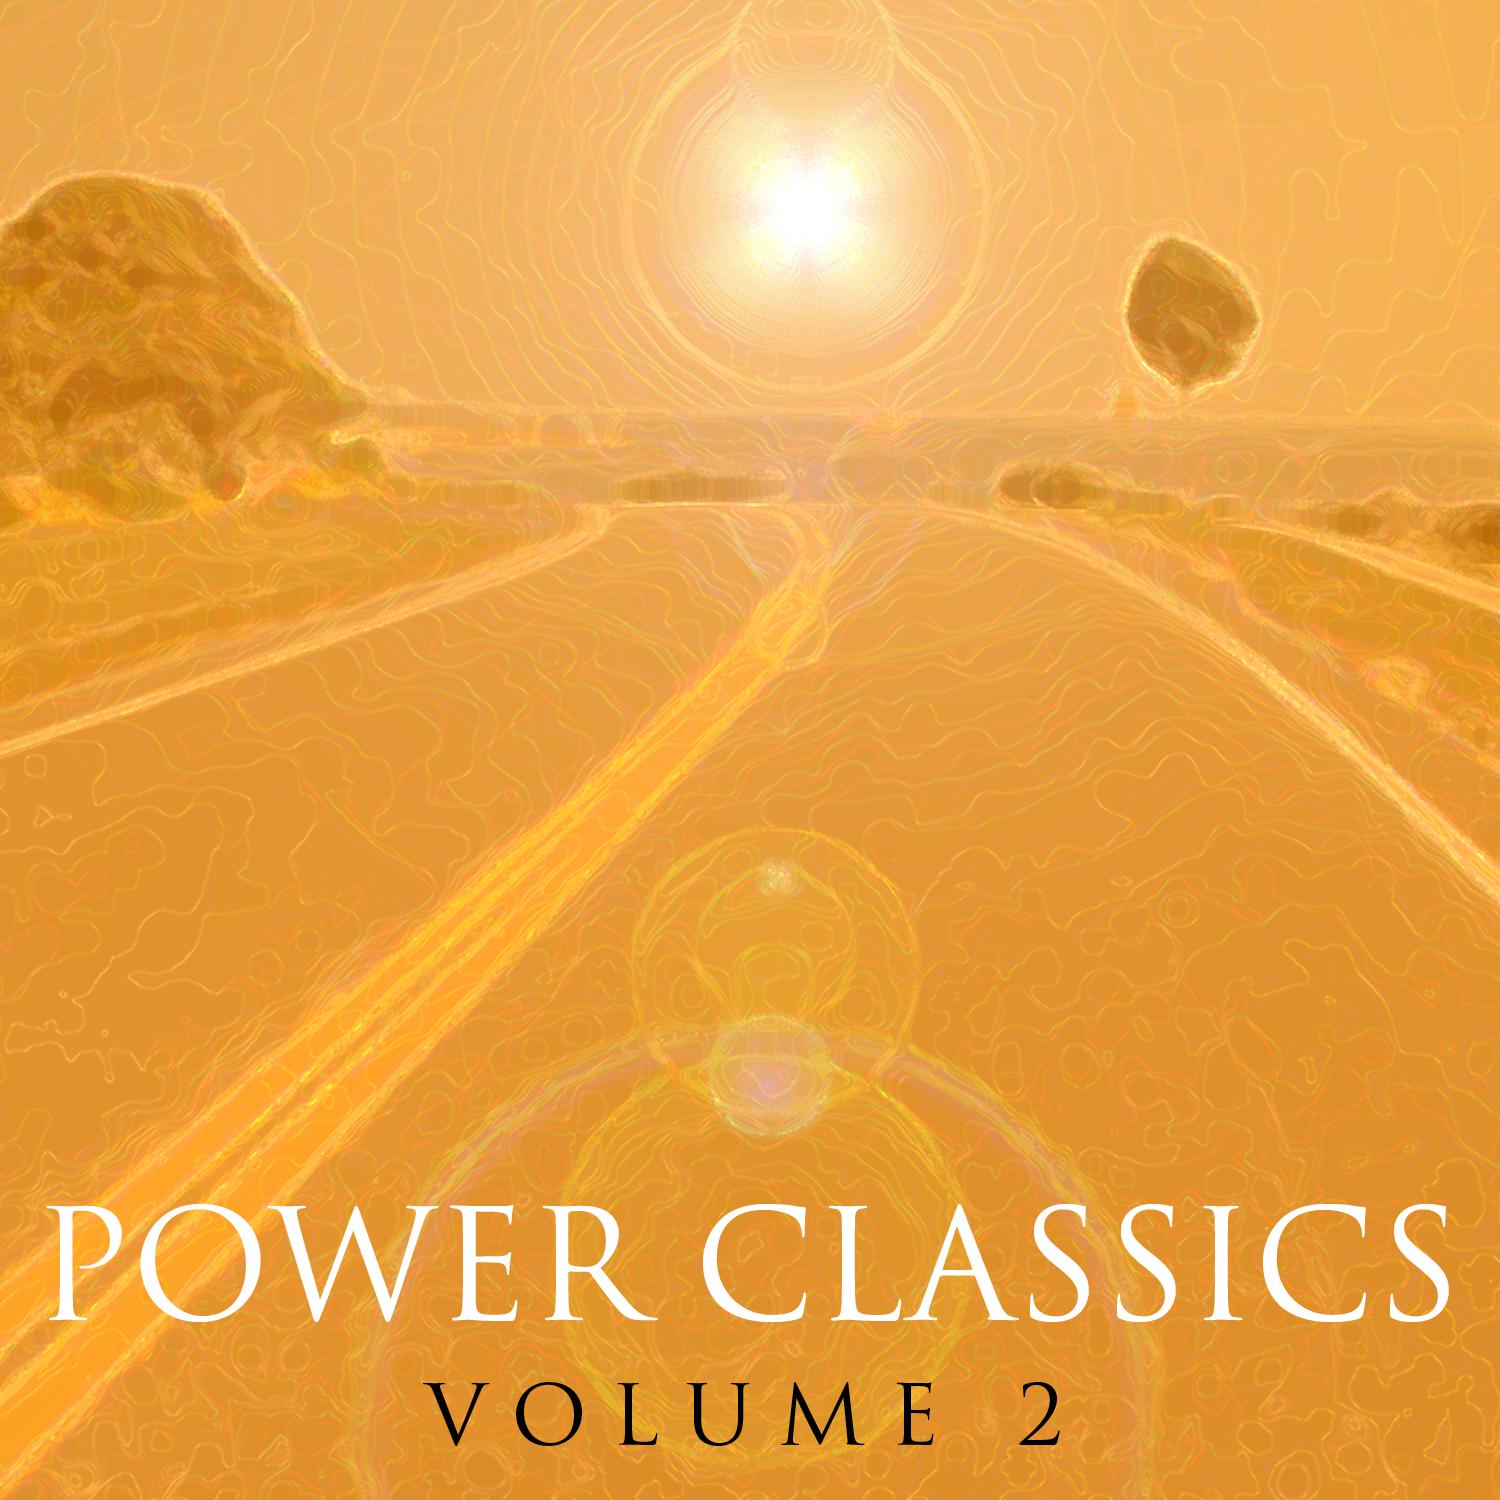 Power Classics Vol 2